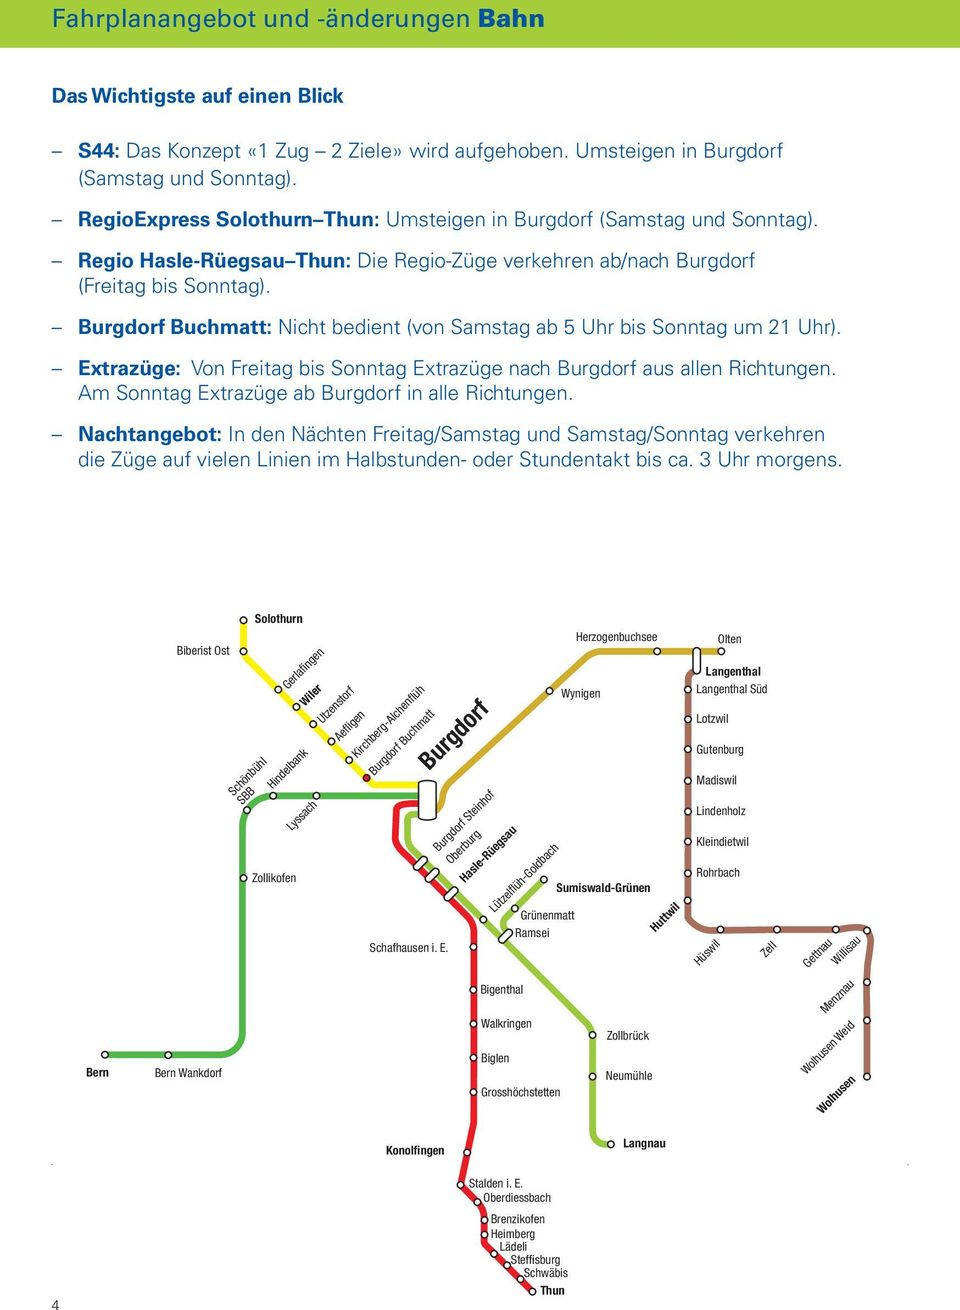 Burgdorf Buchmatt: Nicht bedient (von Samstag ab 5 Uhr bis Sonntag um 21 Uhr). Extrazüge: Von Freitag bis Sonntag Extrazüge nach Burgdorf aus allen Richtungen.